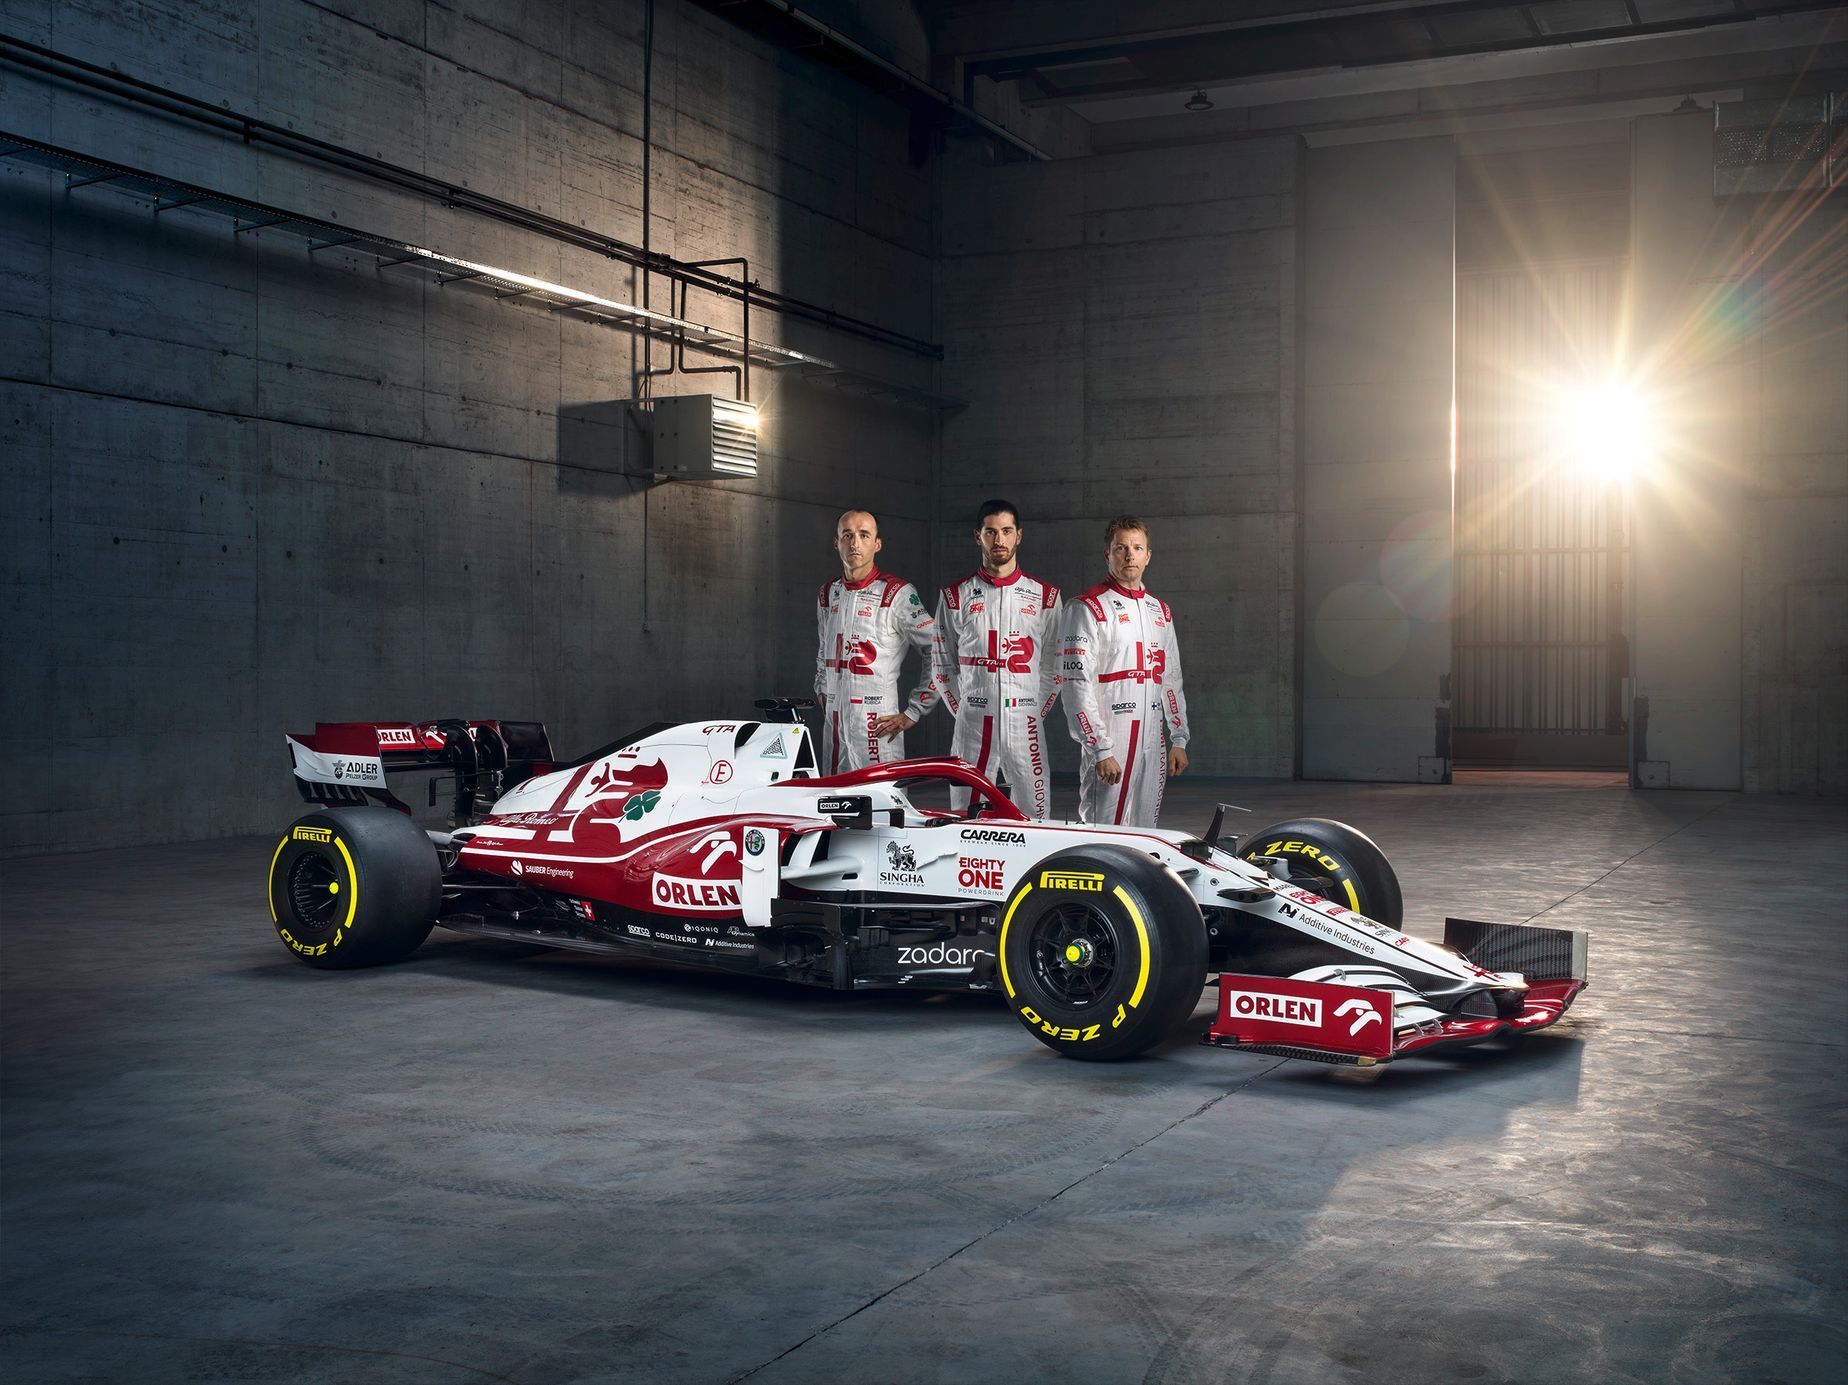 Robert Kubica, Antonio Giovinazzi a Kimi Räikkönen při představení nového monopostu Alfa Romeo C41